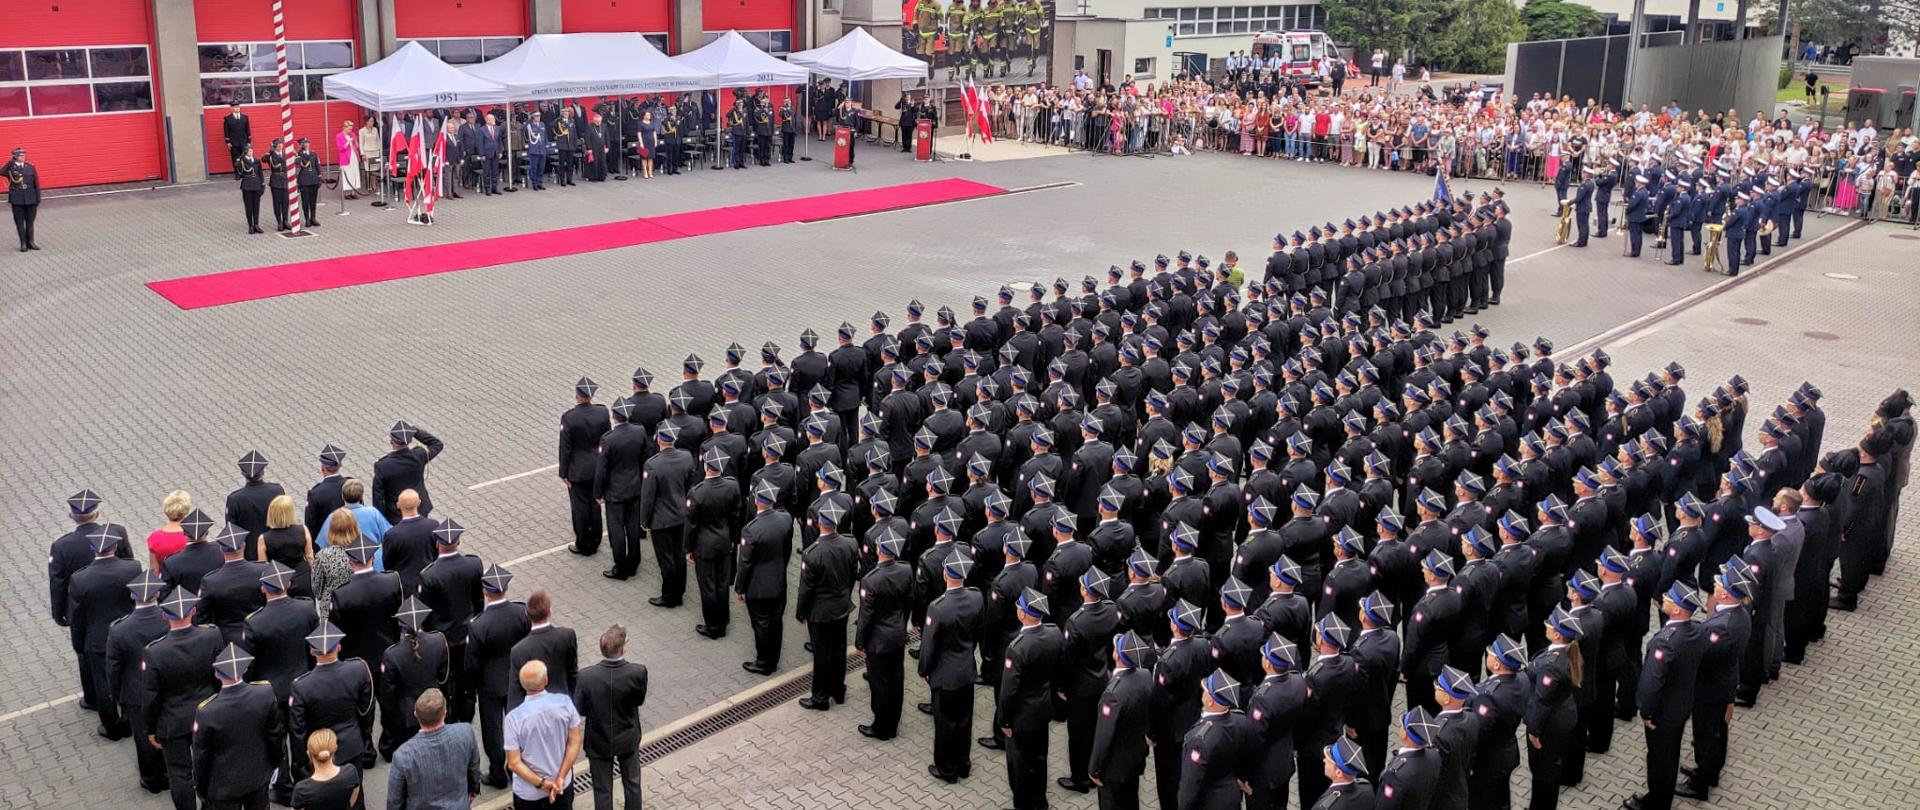 Zdjęcie przedstawia plac wewnętrzny Szkoły Aspirantów Państwowej Straży Pożarnej w Poznaniu podczas uroczystego apelu w związku z promocja aspirancką. Na zdjęciu znajdują się pododziały PSP, sztandary oraz publiczność.